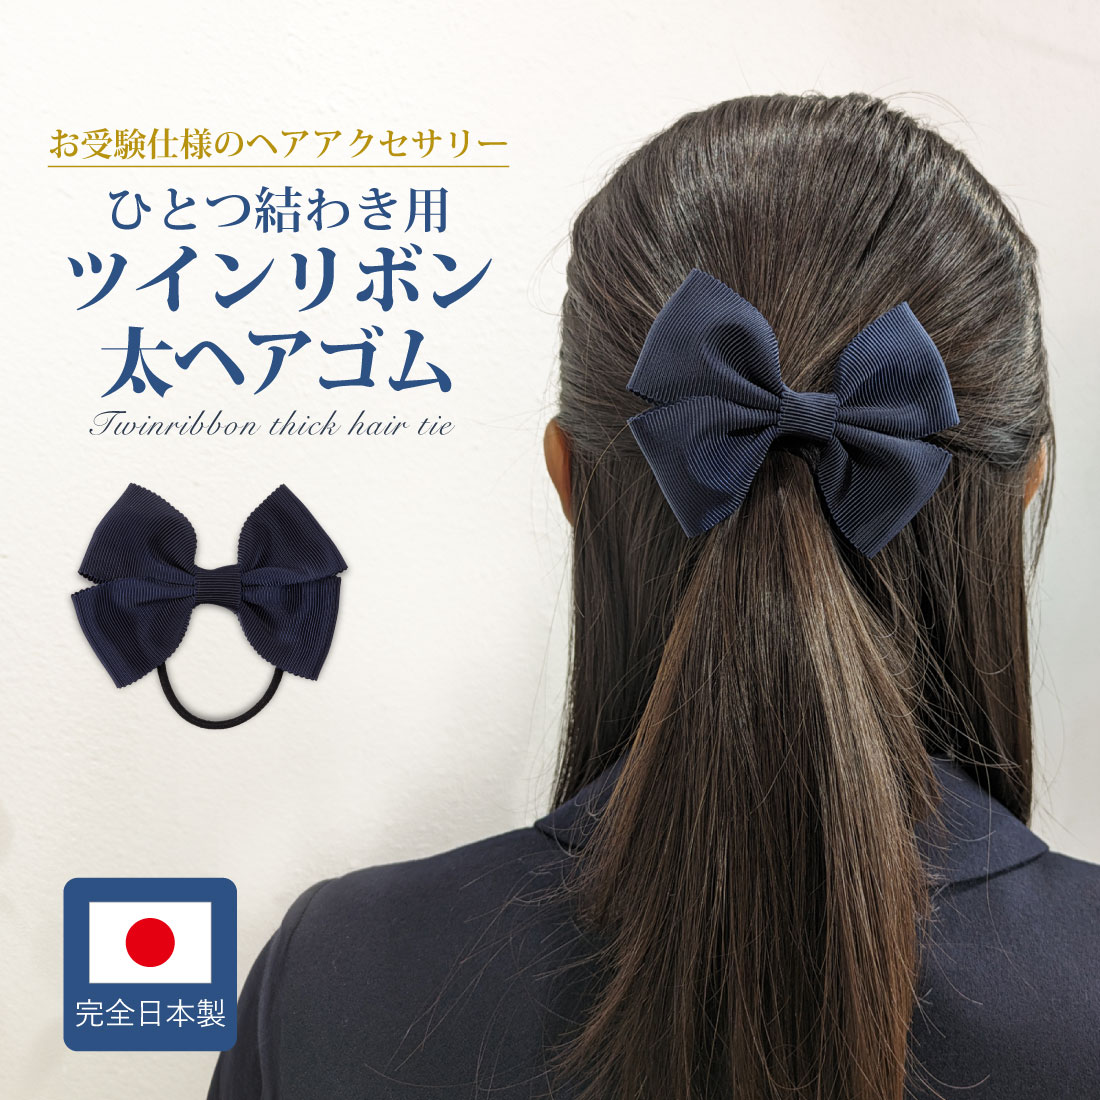 お受験 ヘア 紺 ひとつ結わき用 ツインリボン太ヘアゴム グログランリボン製 完全日本製 百貨店品質